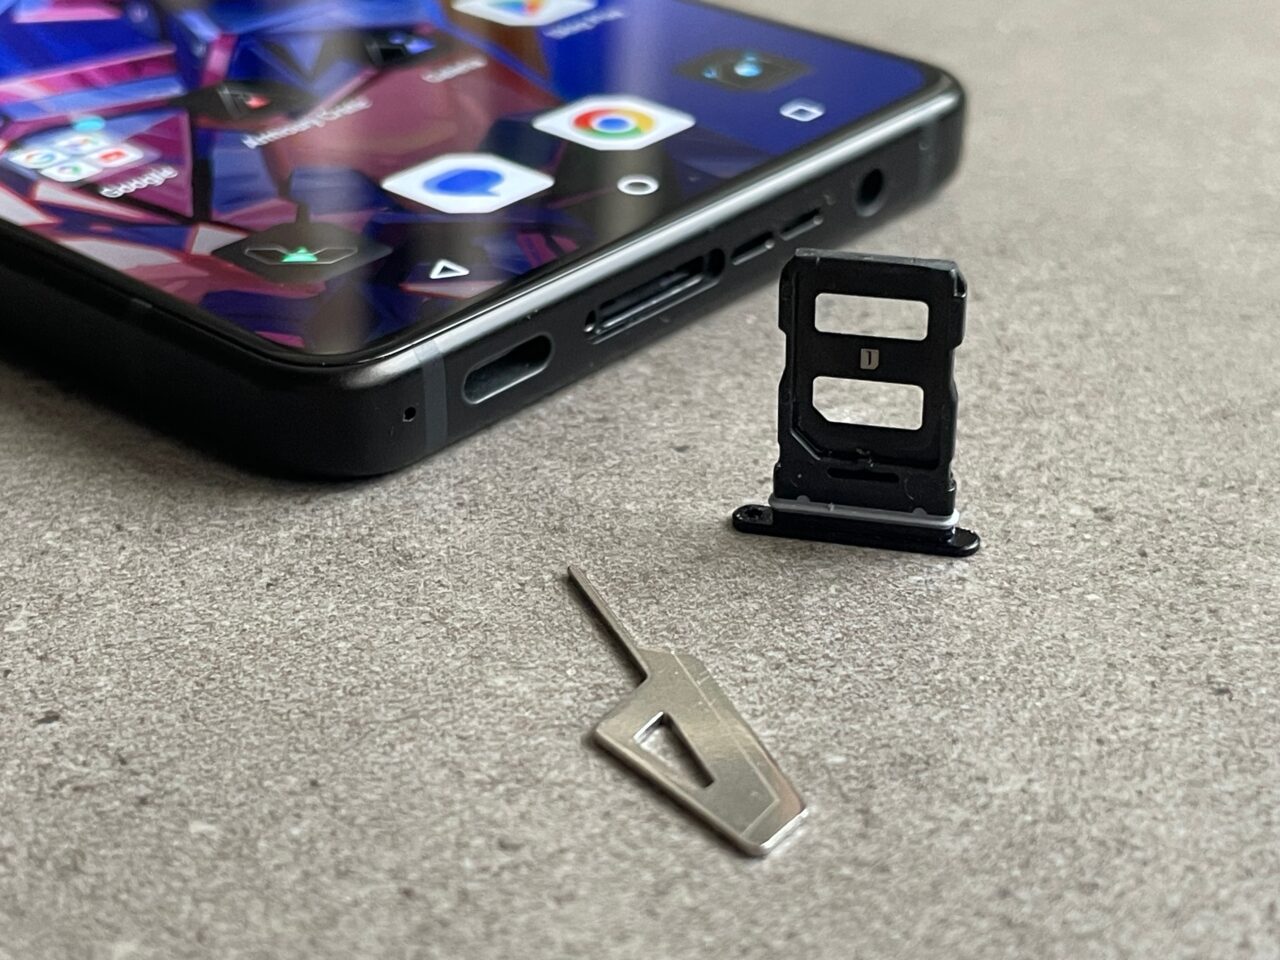 Częściowo widoczny smartfon leżący na szarym tle i obok niego leżąca tacka karty SIM oraz metalowe narzędzie do jej wyjęcia.